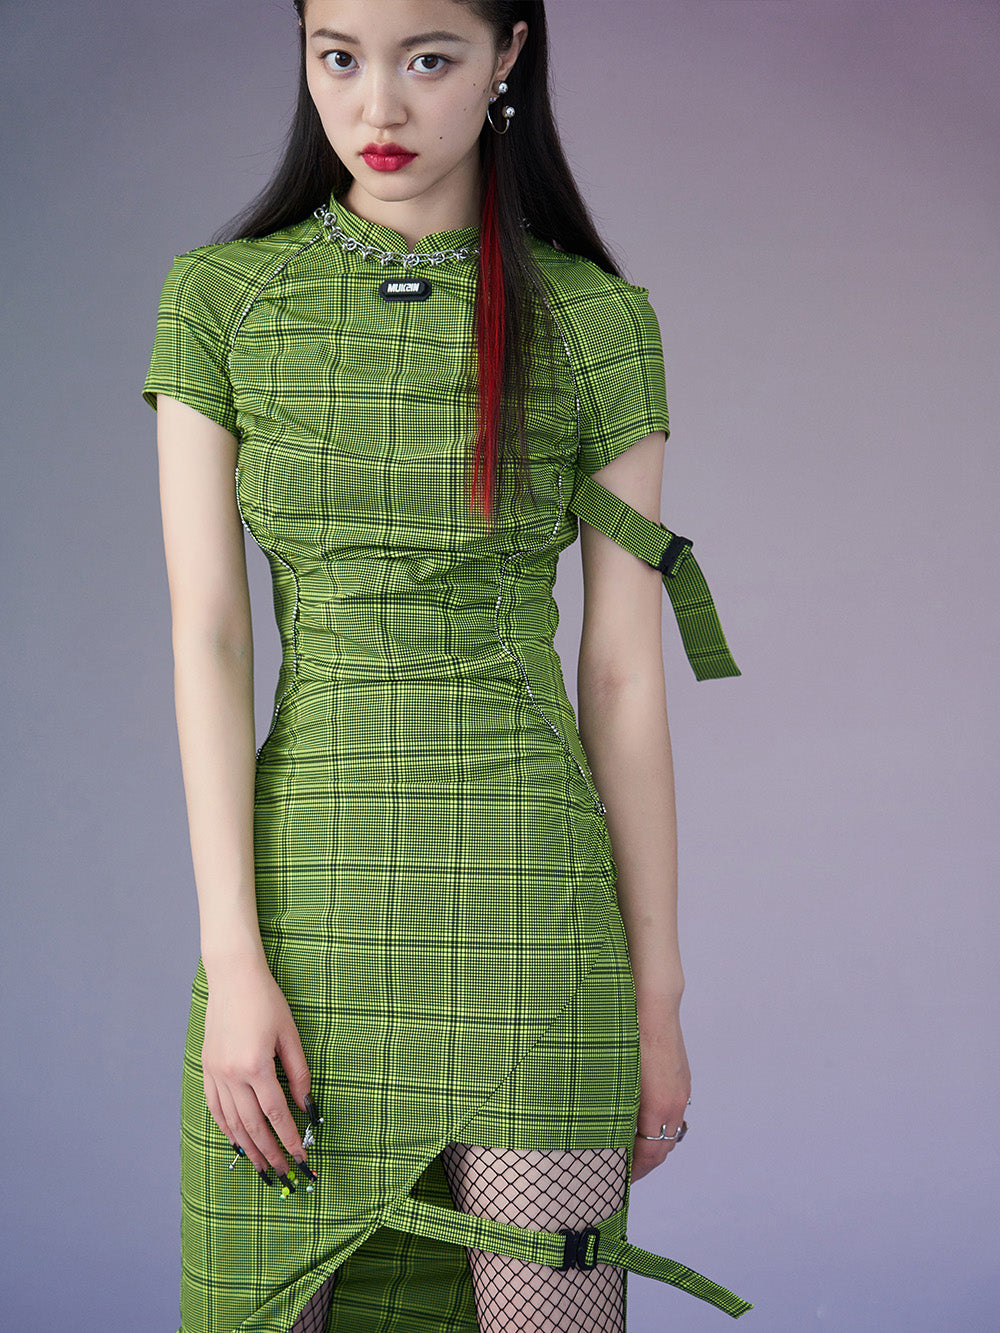 MUKZIN Green Plaid Short-sleeved Slim Cheongsam Qi Pao